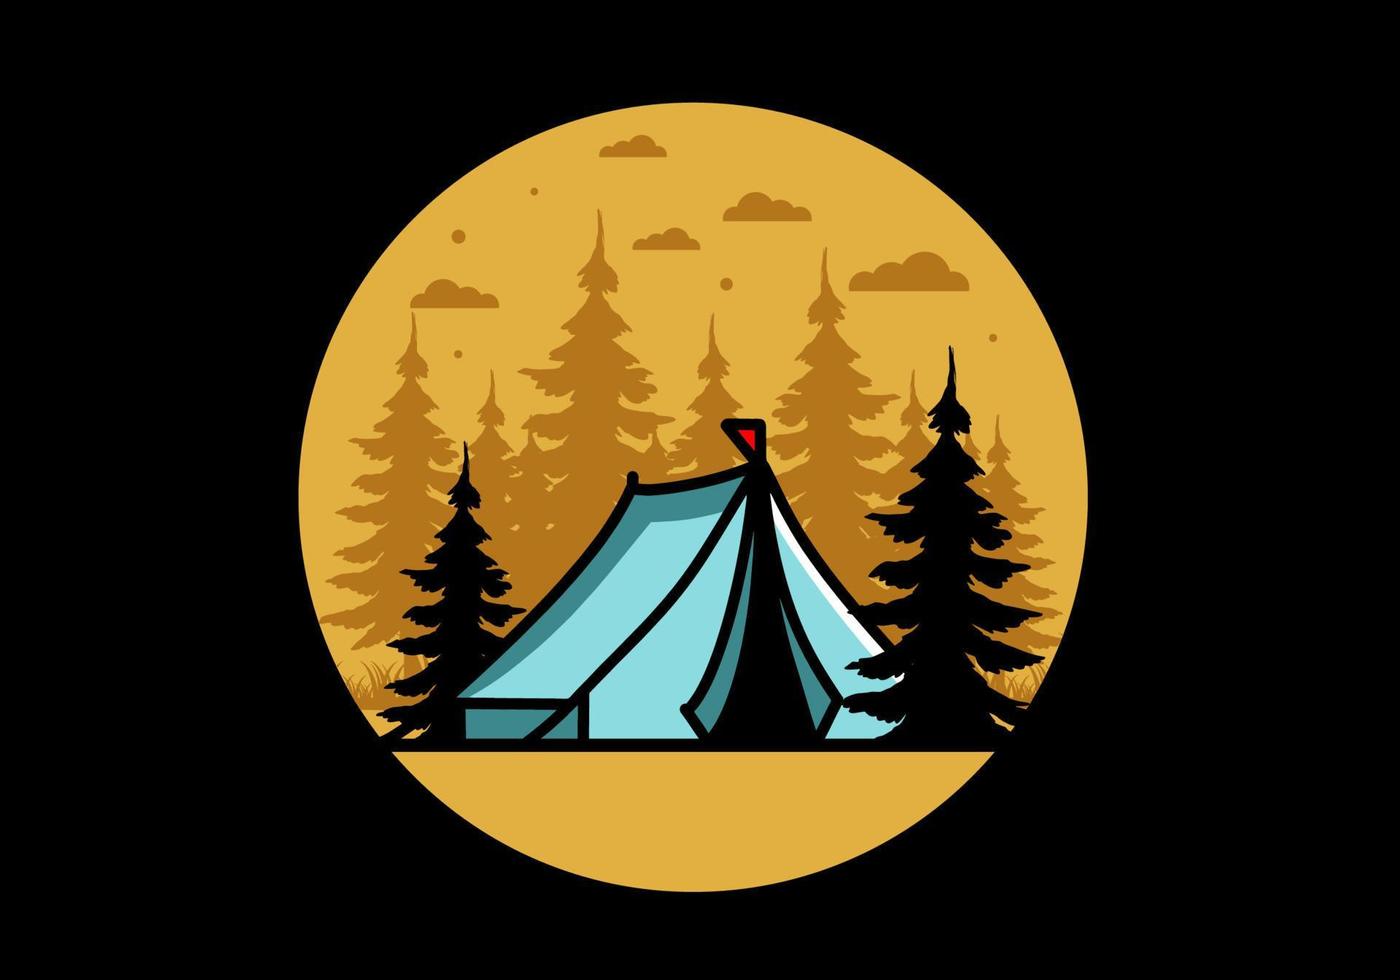 grote camping tent illustratie ontwerp vector